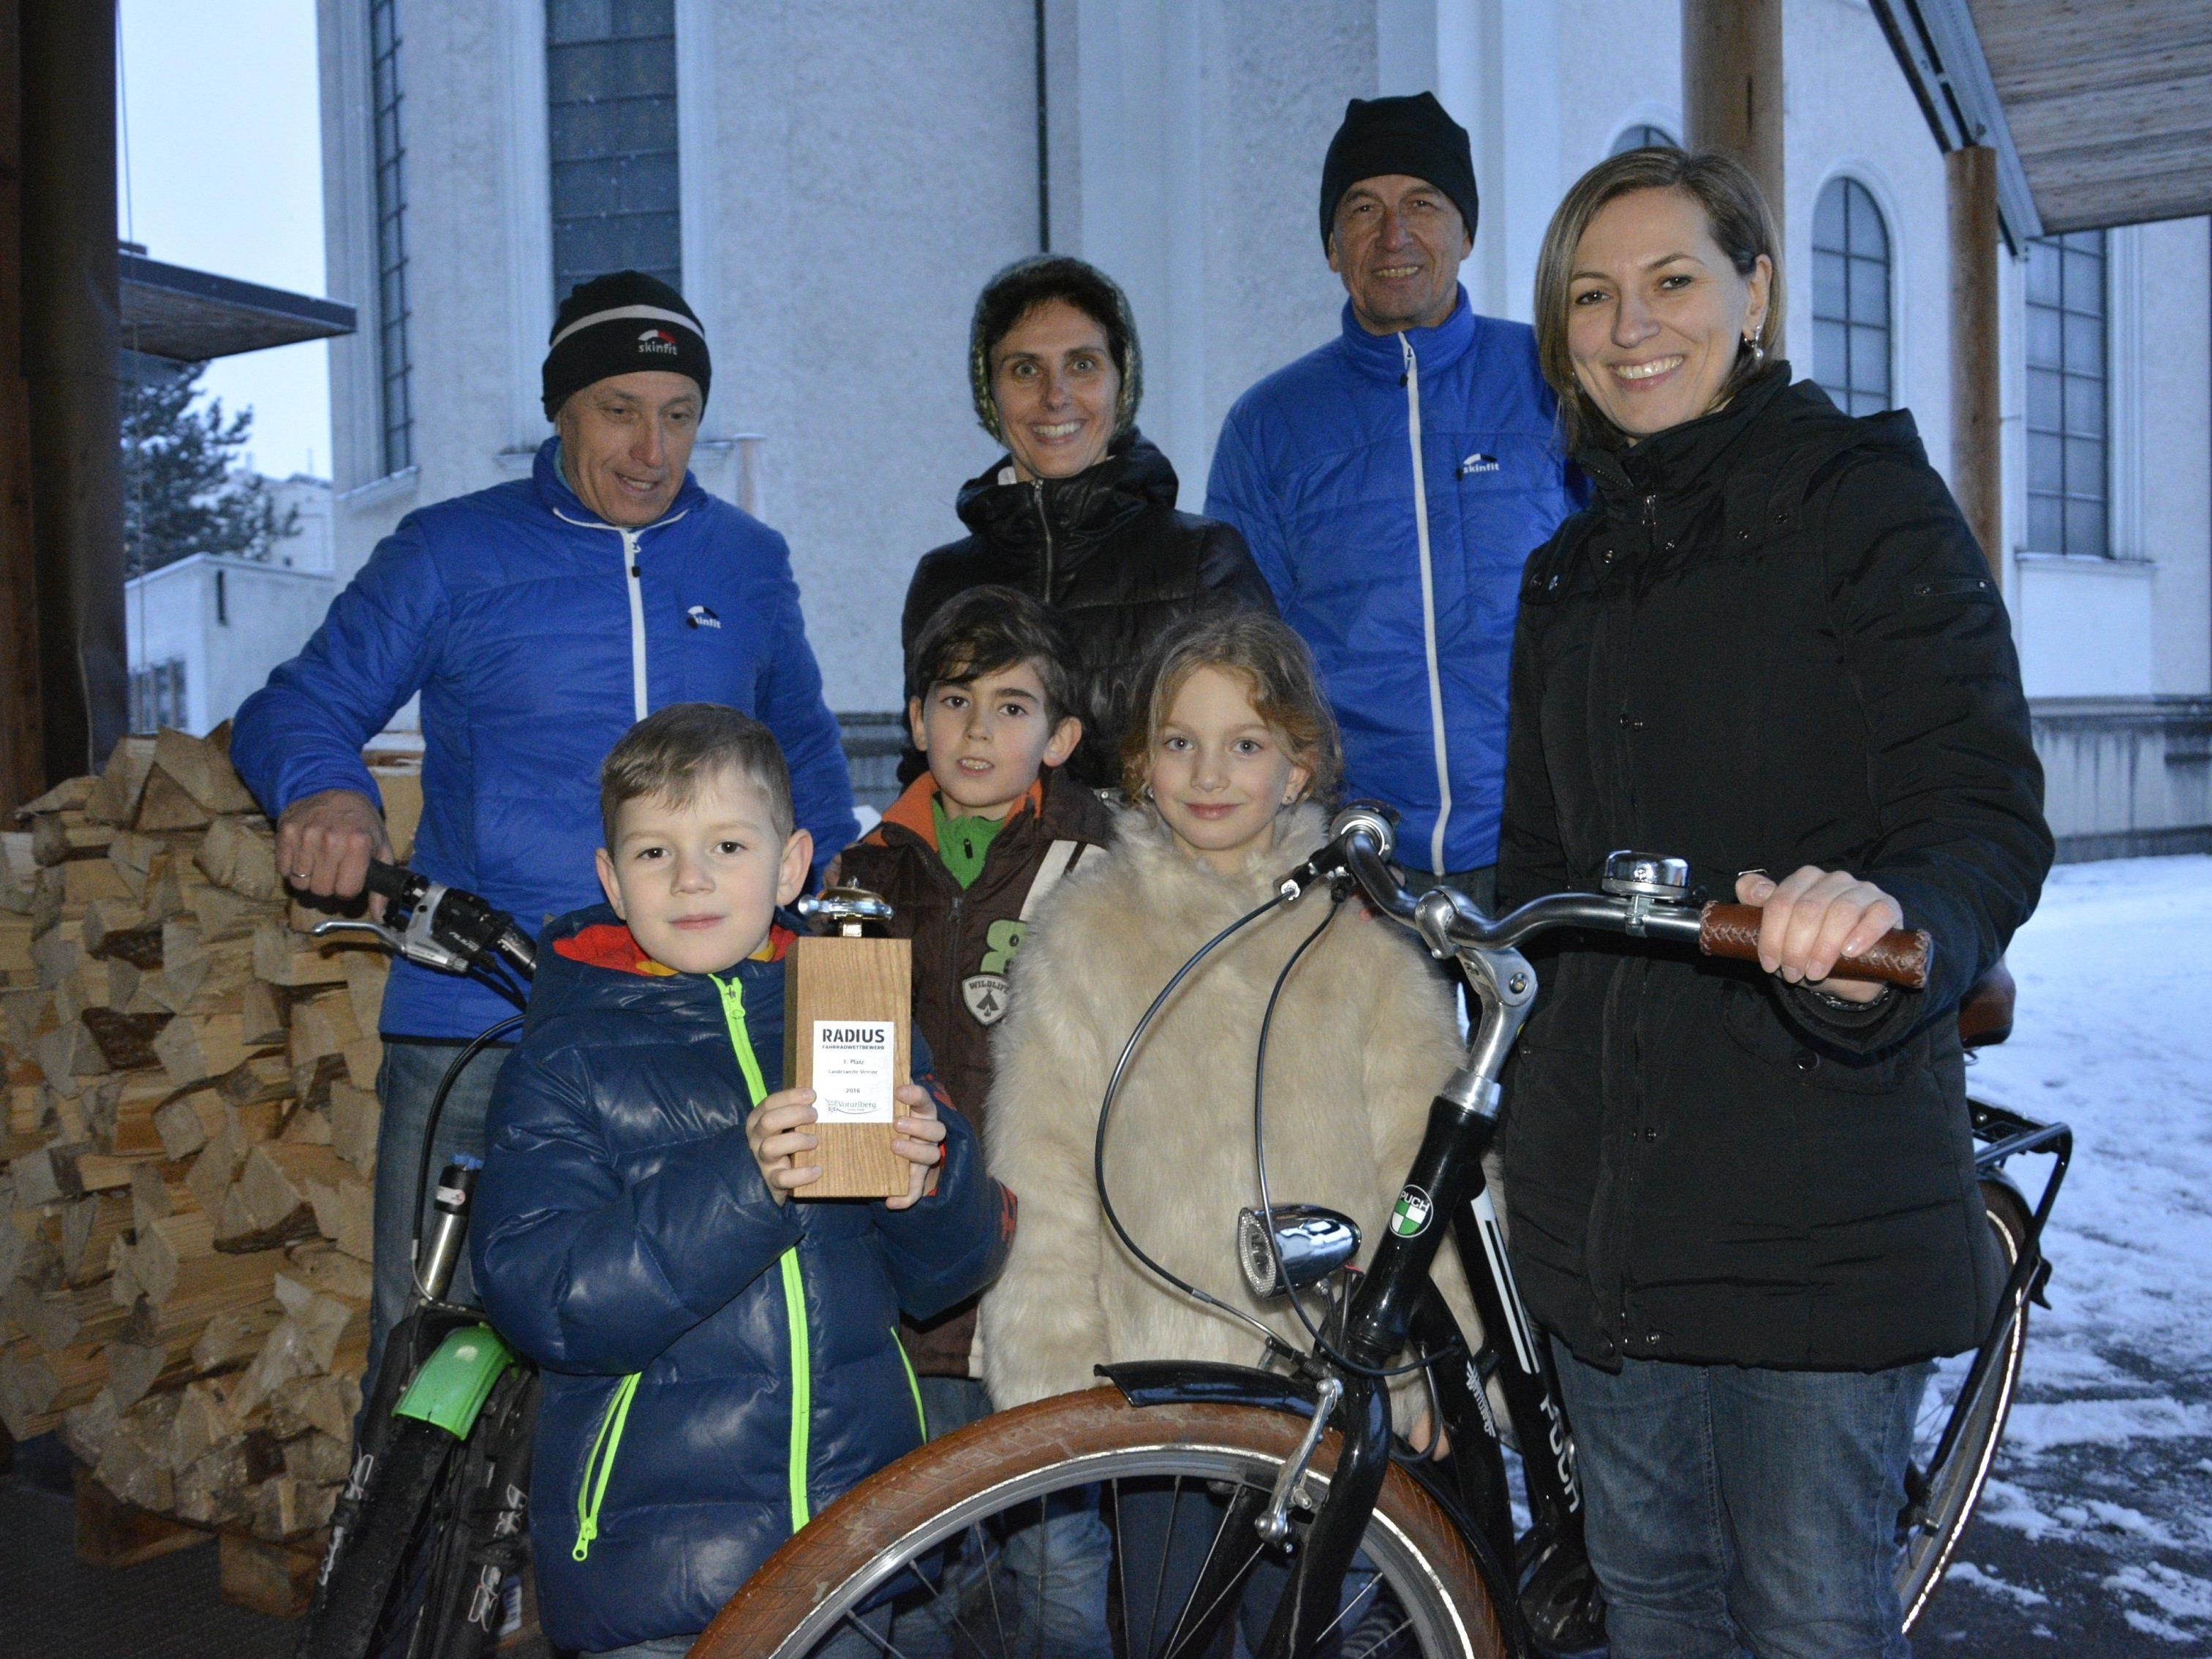 Freude herrschte bei Groß und Klein über die „Goldene Klingel“ für den ersten Rang des Fahrradwettbewerbs 2016.